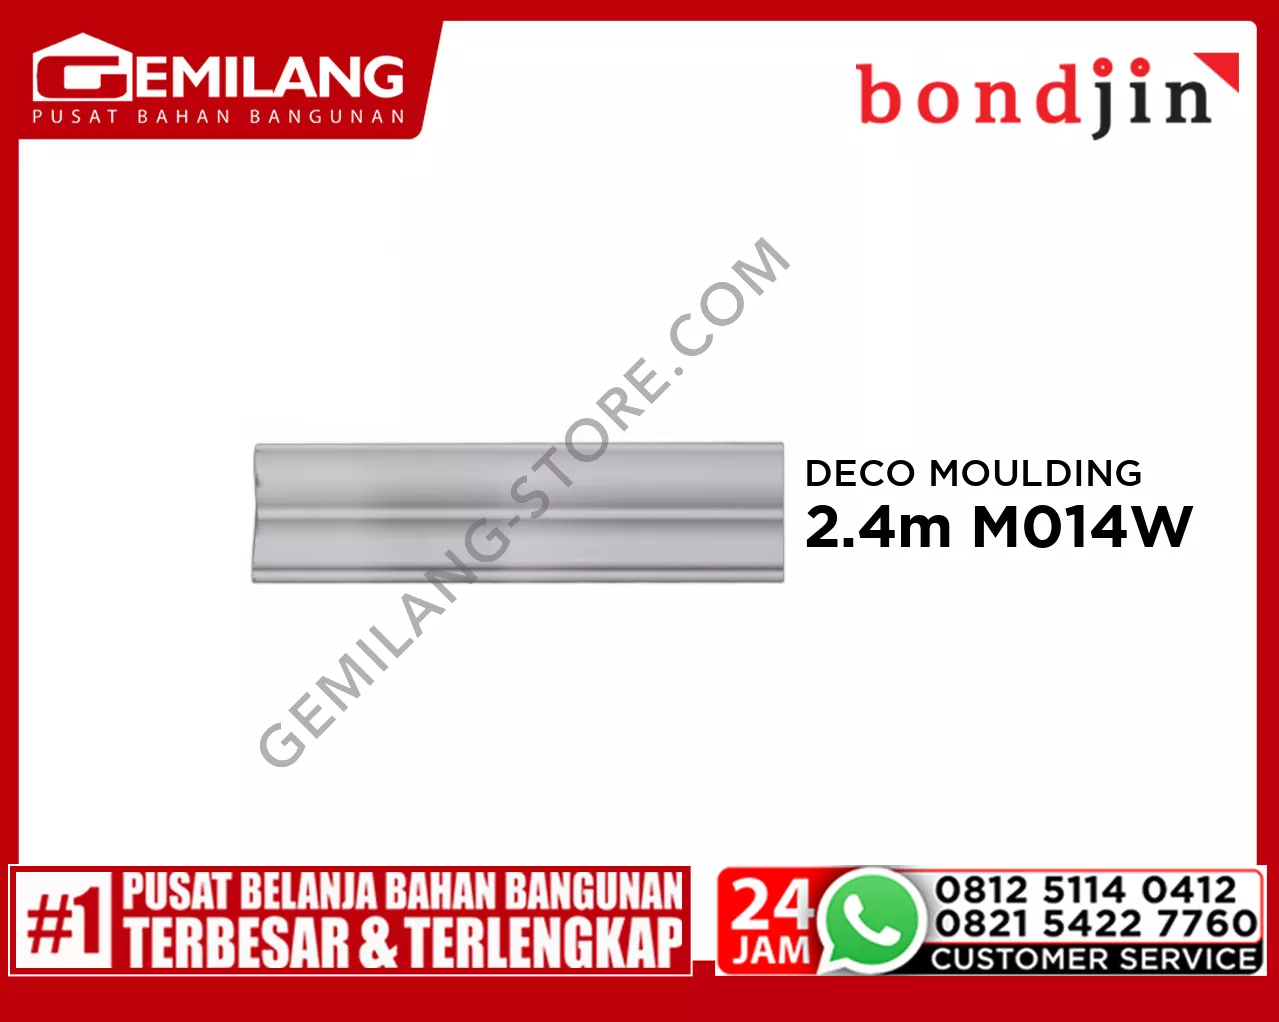 BONDJIN DECO MOULDING 2.4M M014-W